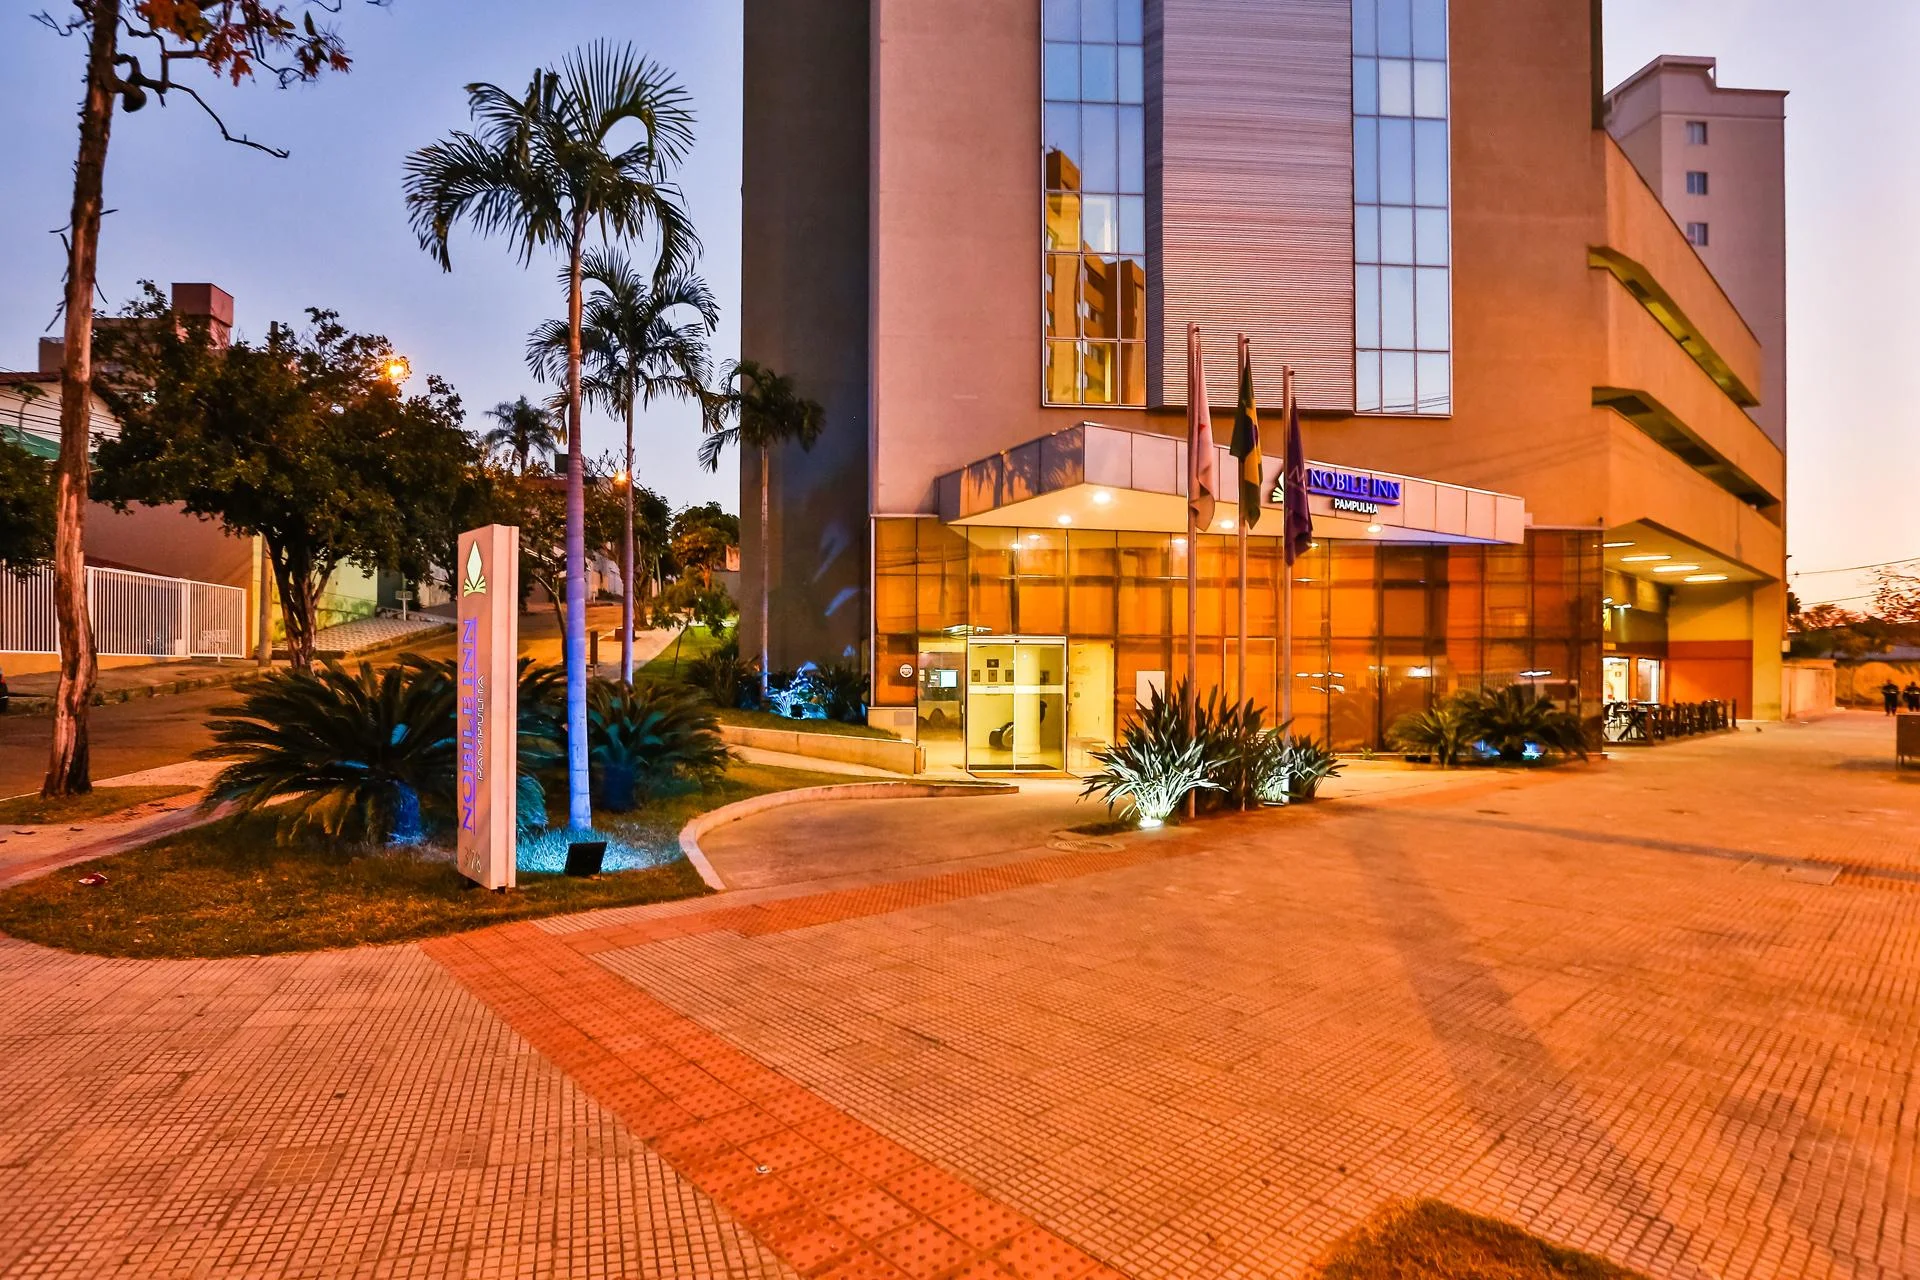 Onde se hospedar em Belo Horizonte: hotéis | Nobile Inn Pampulha | Conexão123